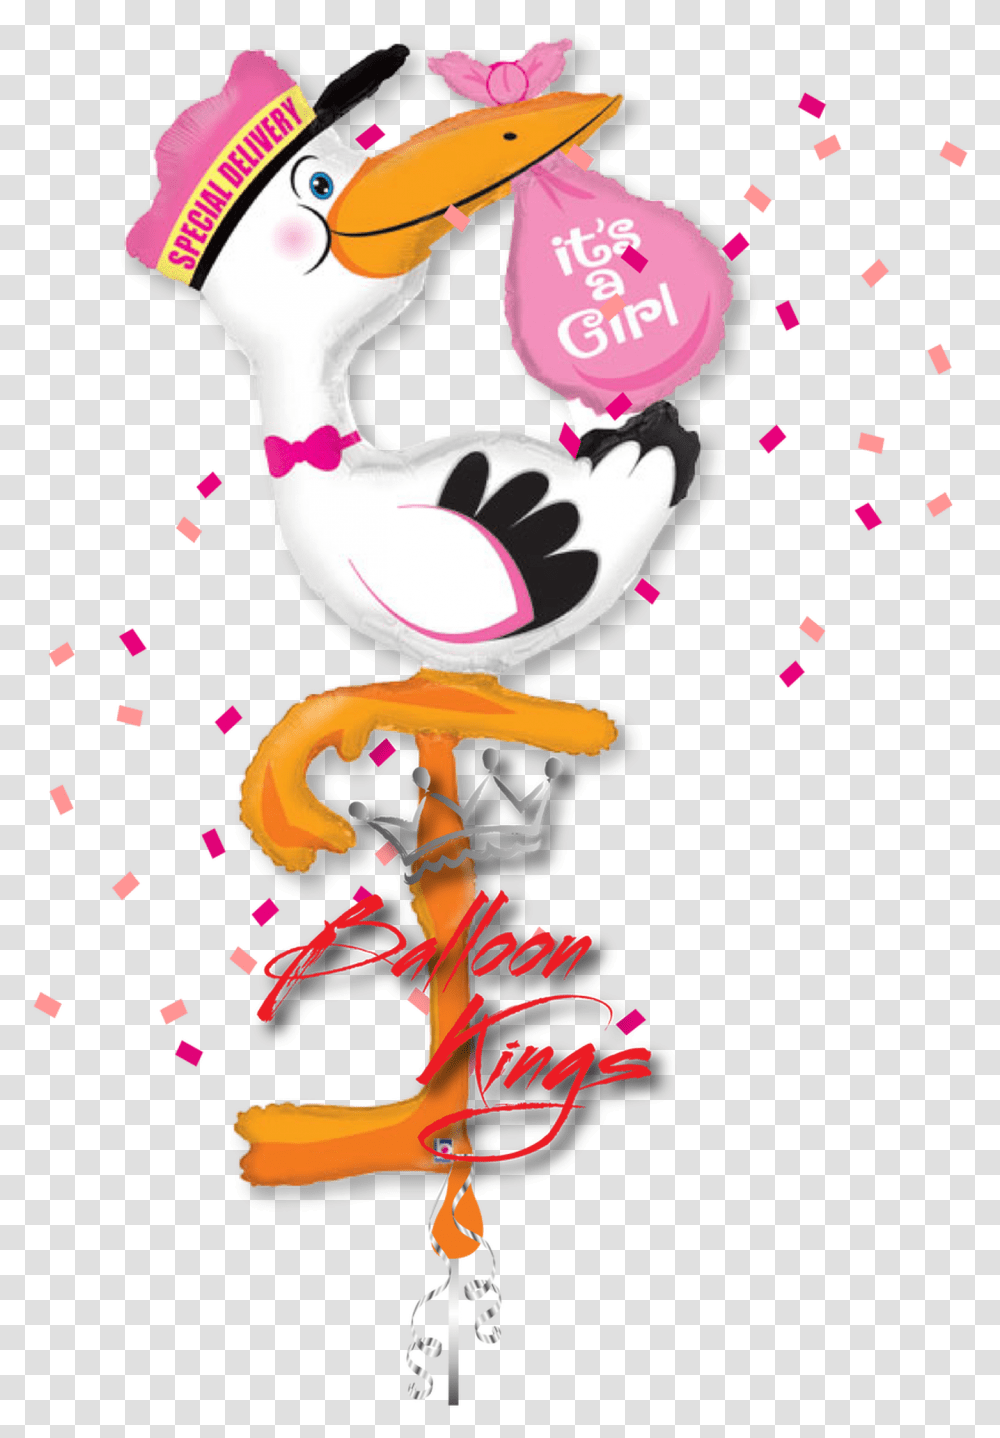 Its A Girl Stork Airwalker Stork Foil Balloon, Paper, Animal, Bird, Confetti Transparent Png